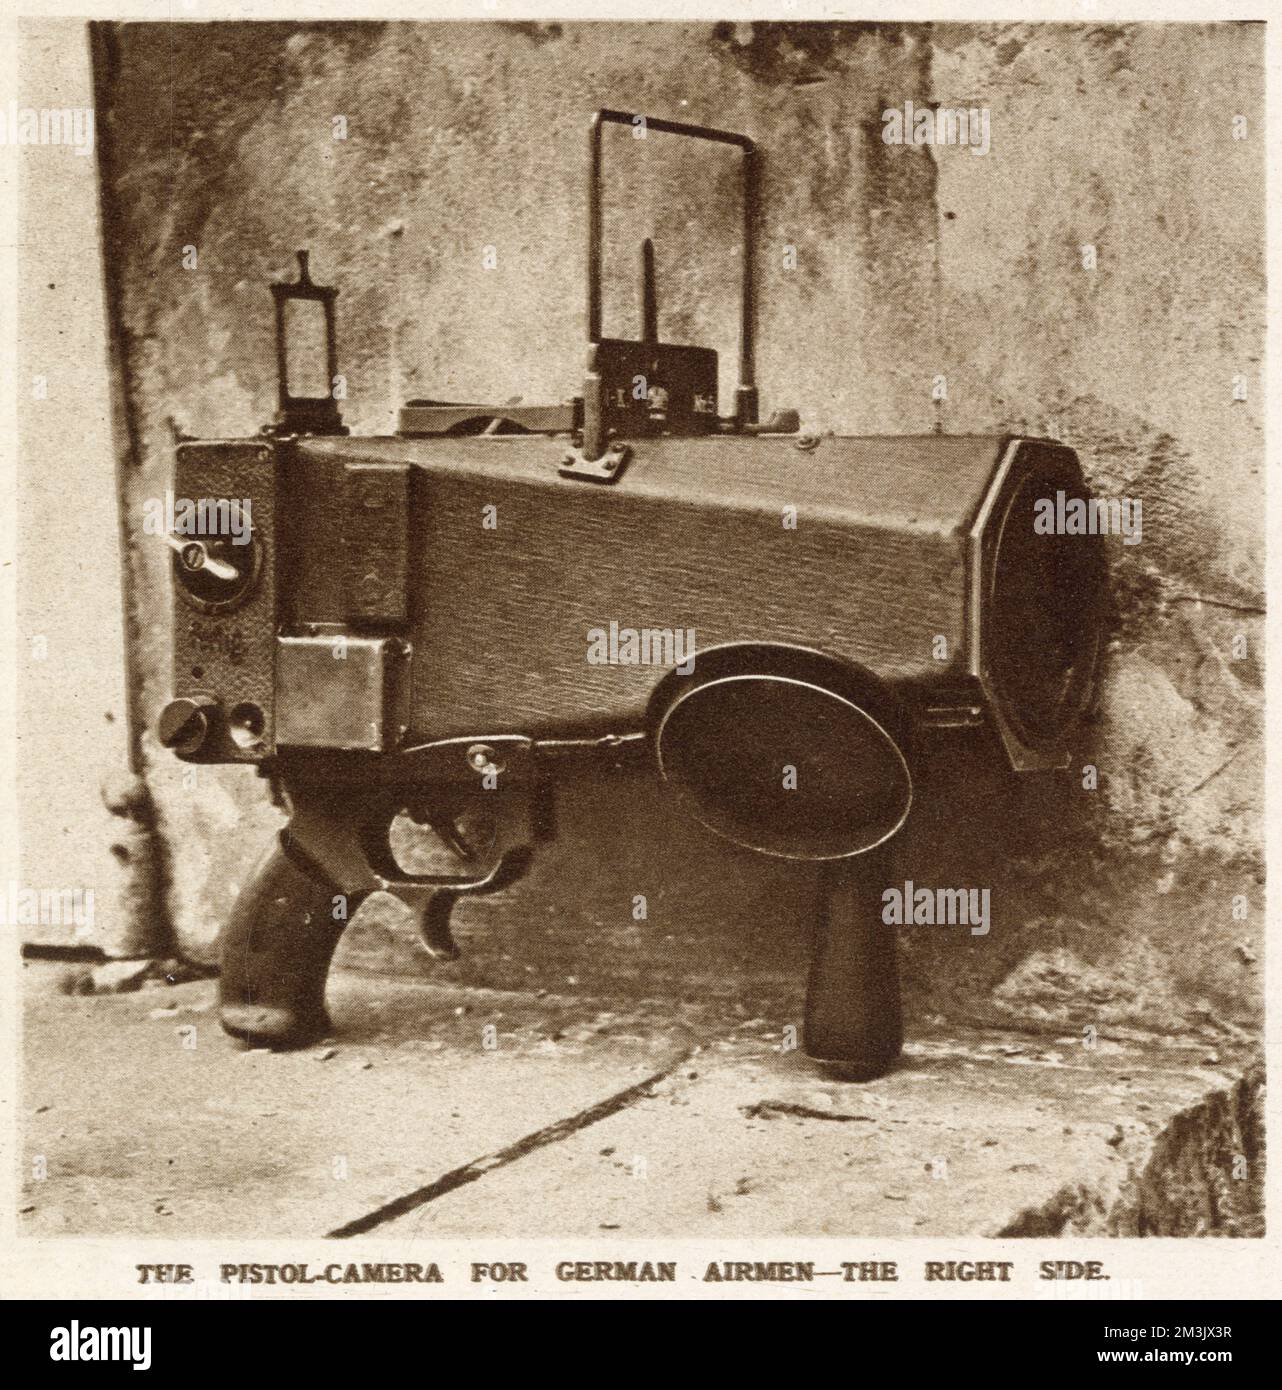 Eine Pistolenkamera, wie sie von deutschen Flugzeugen während des Ersten Weltkriegs verwendet wurde, um Luftaufnahmen von feindlichen Linien zu machen. Stockfoto